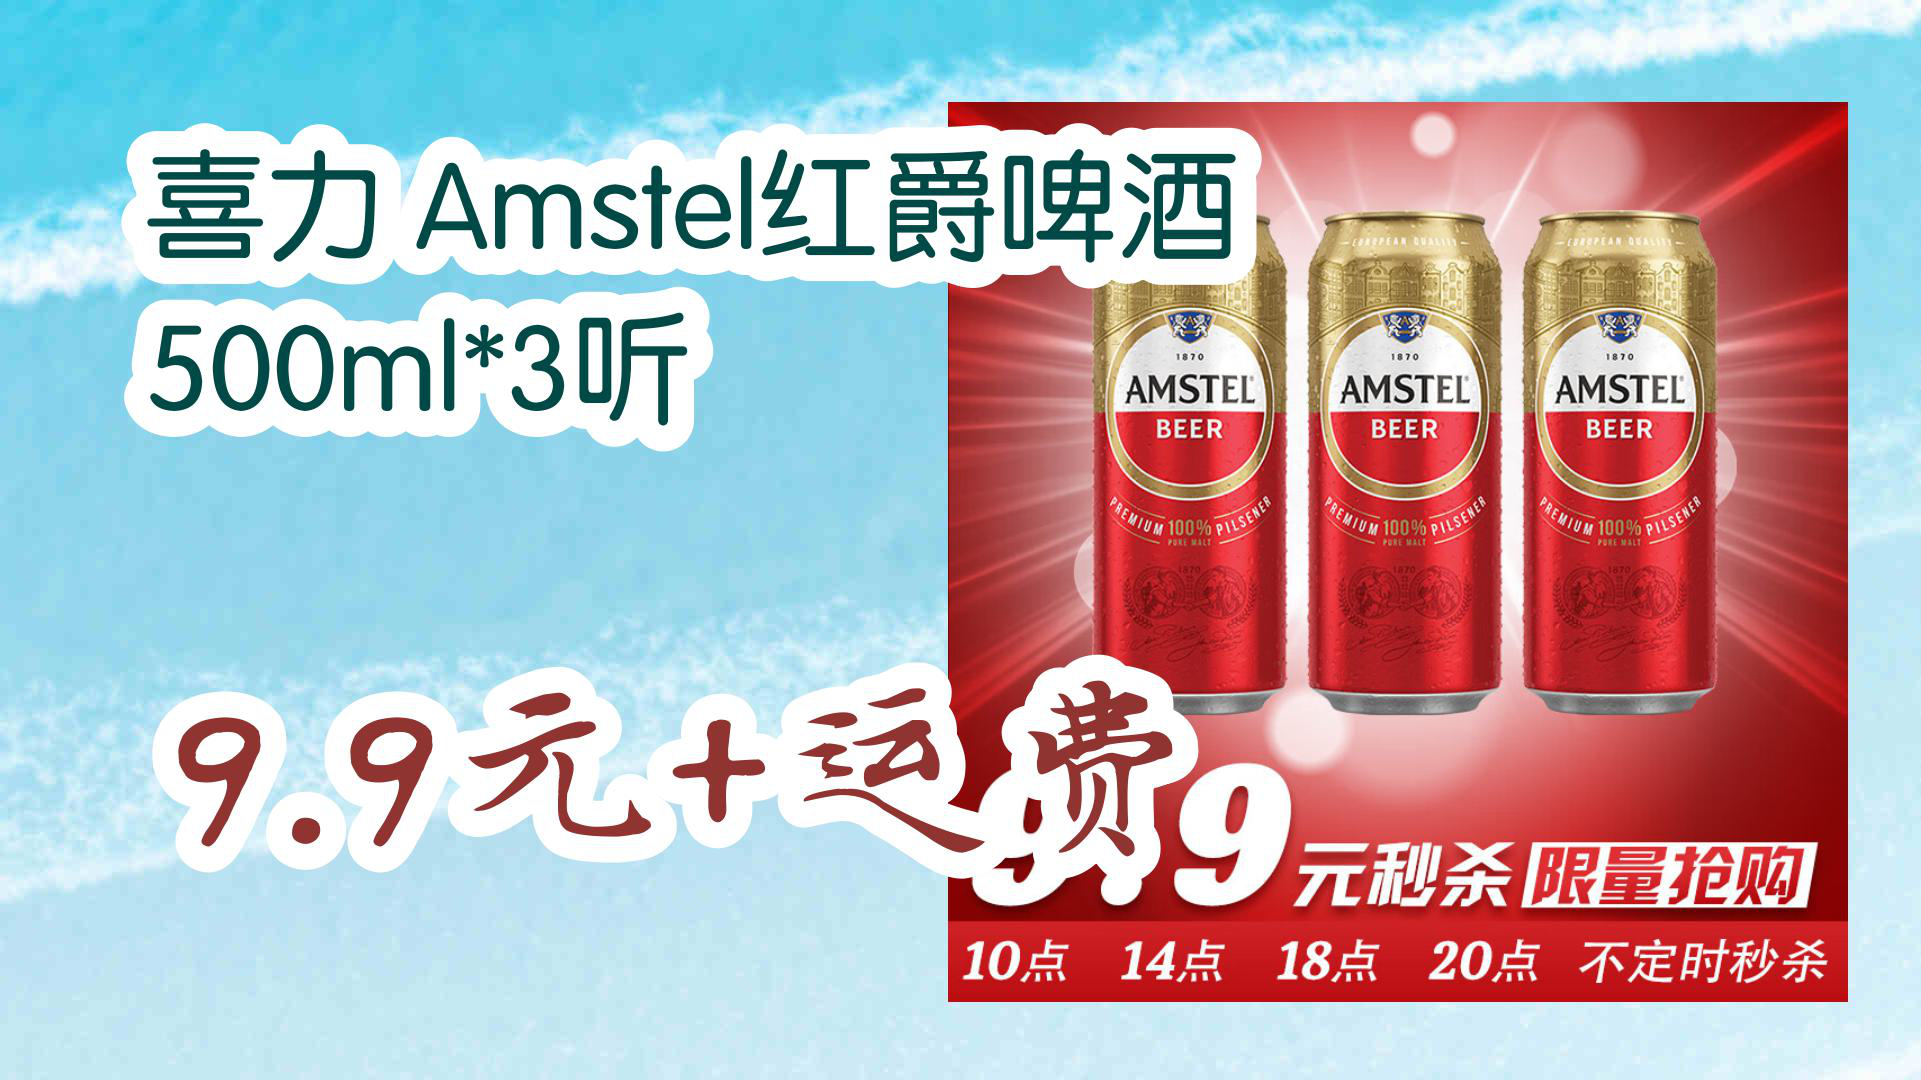 amstel啤酒介绍图片